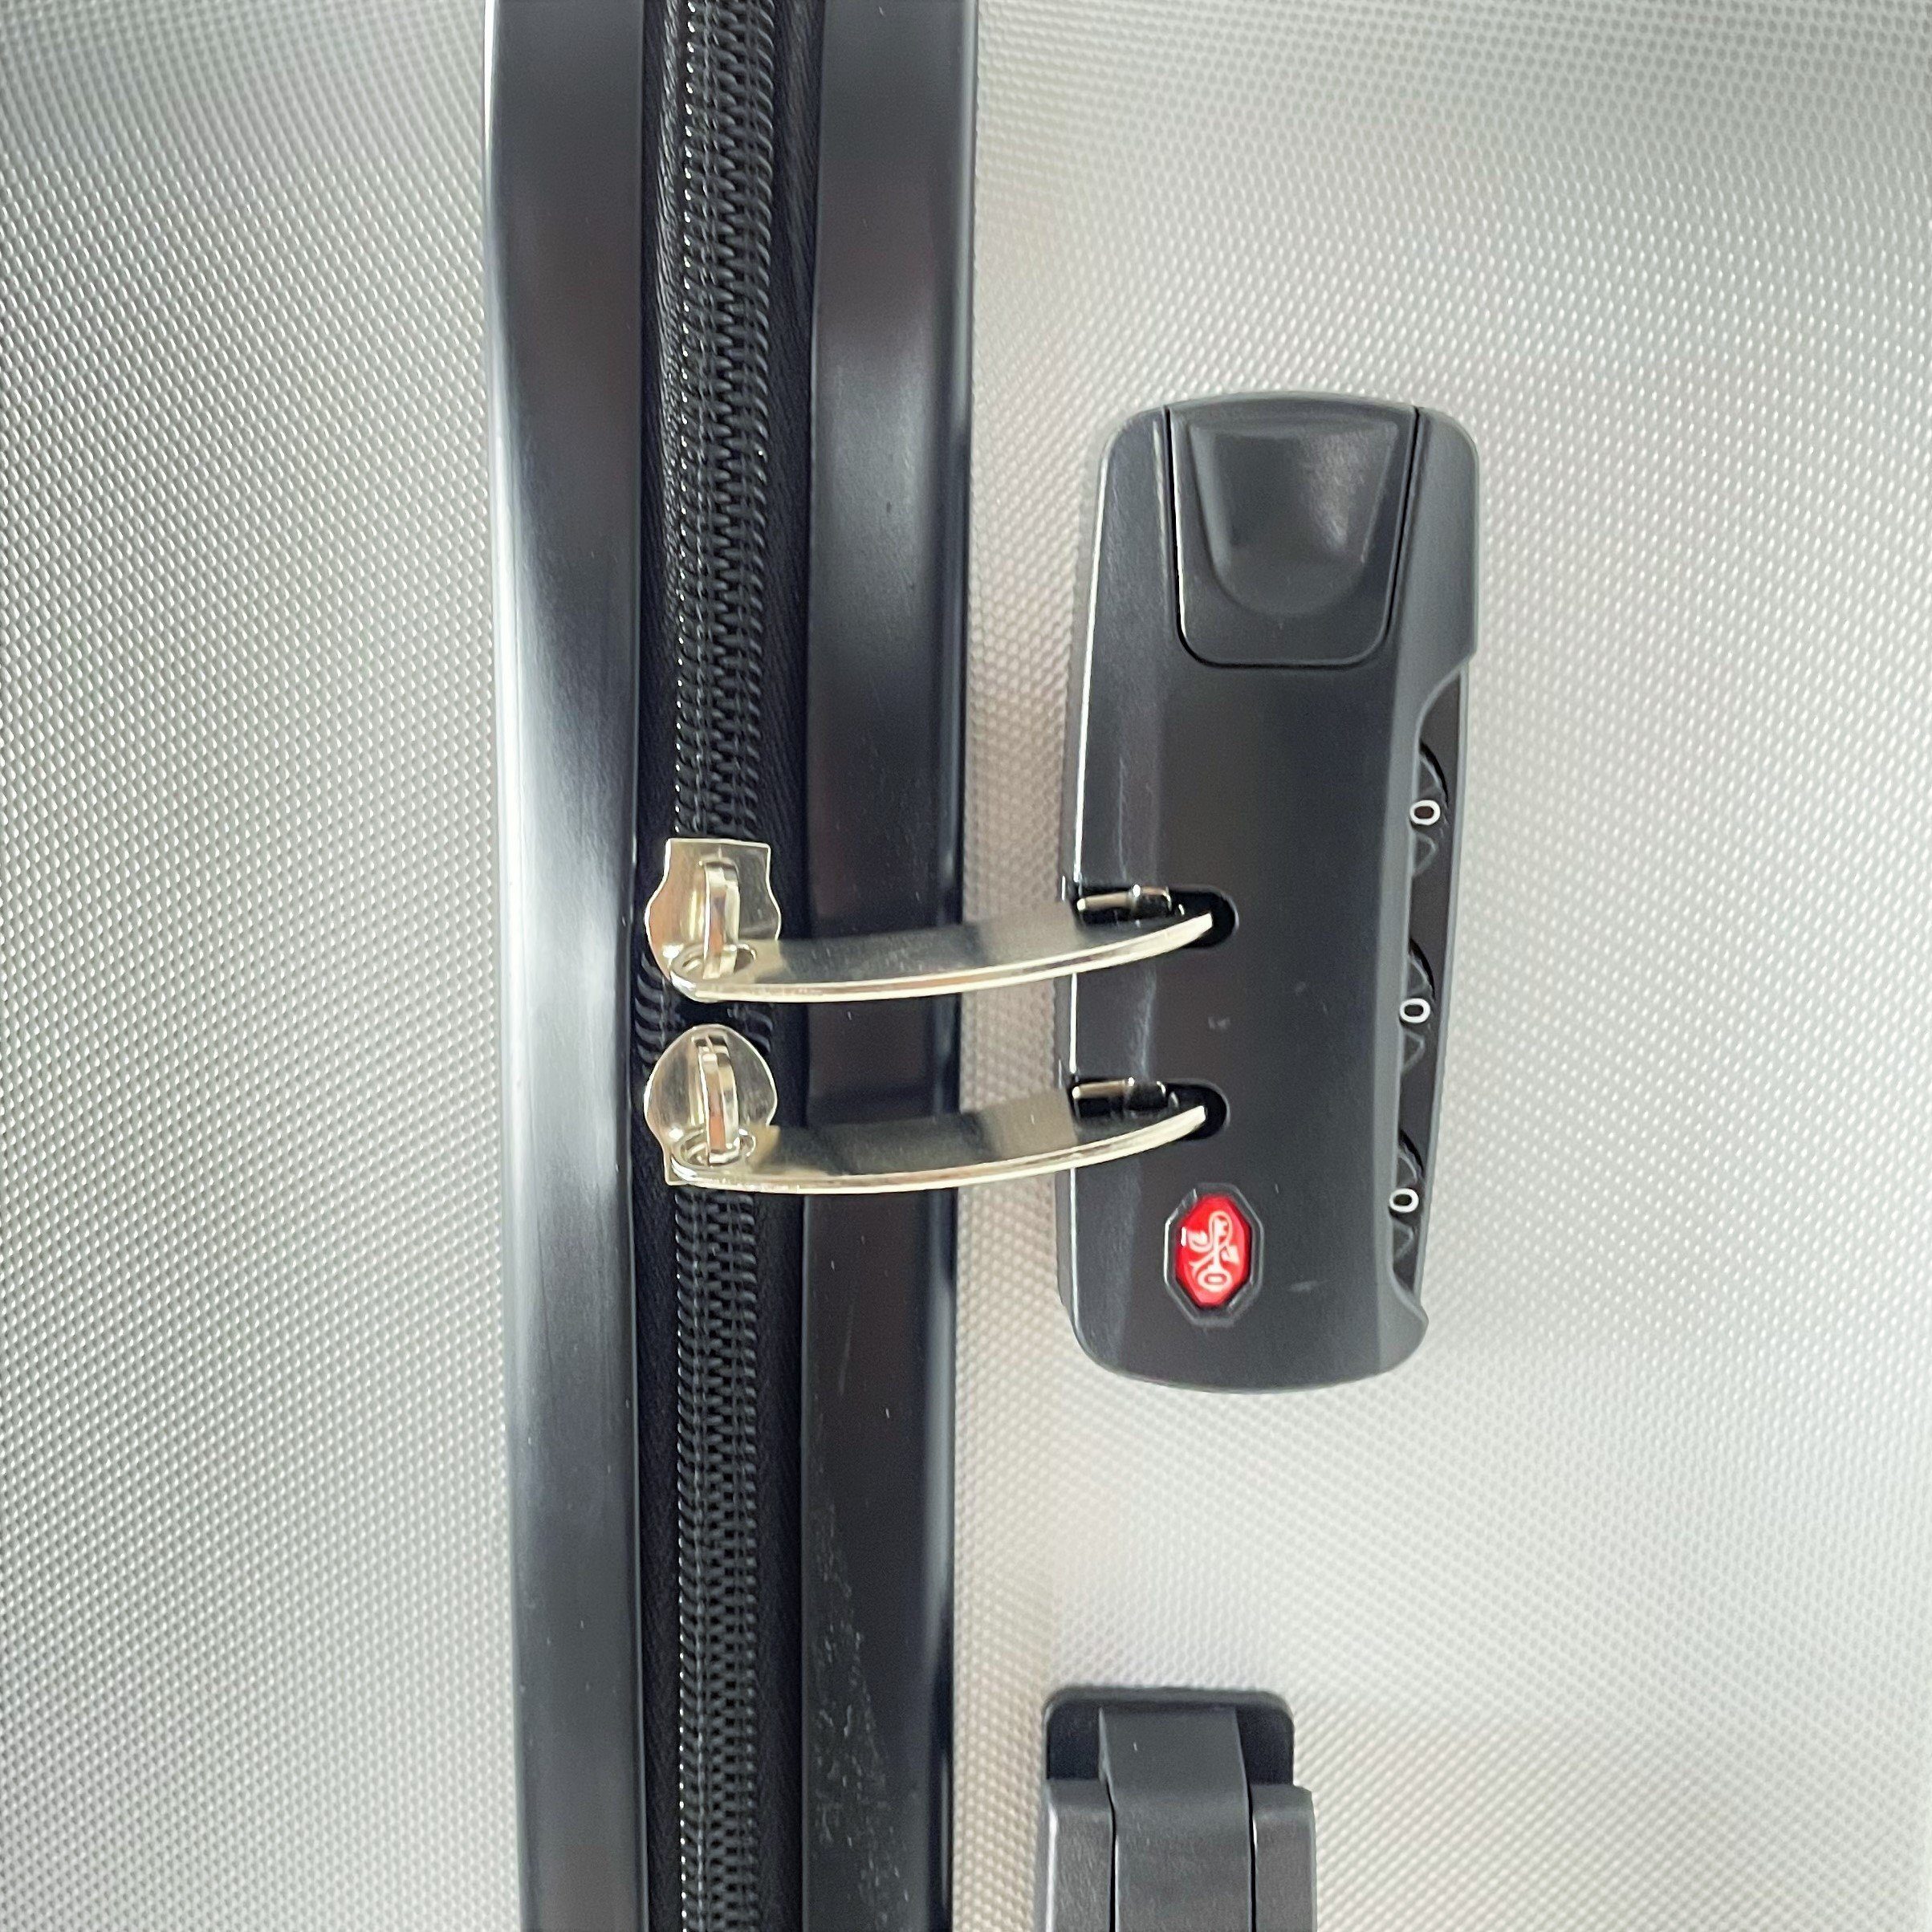 MTB Koffer Hartschalenkoffer ABS Reisekoffer Silber (Handgepäck-Mittel-Groß-Set)